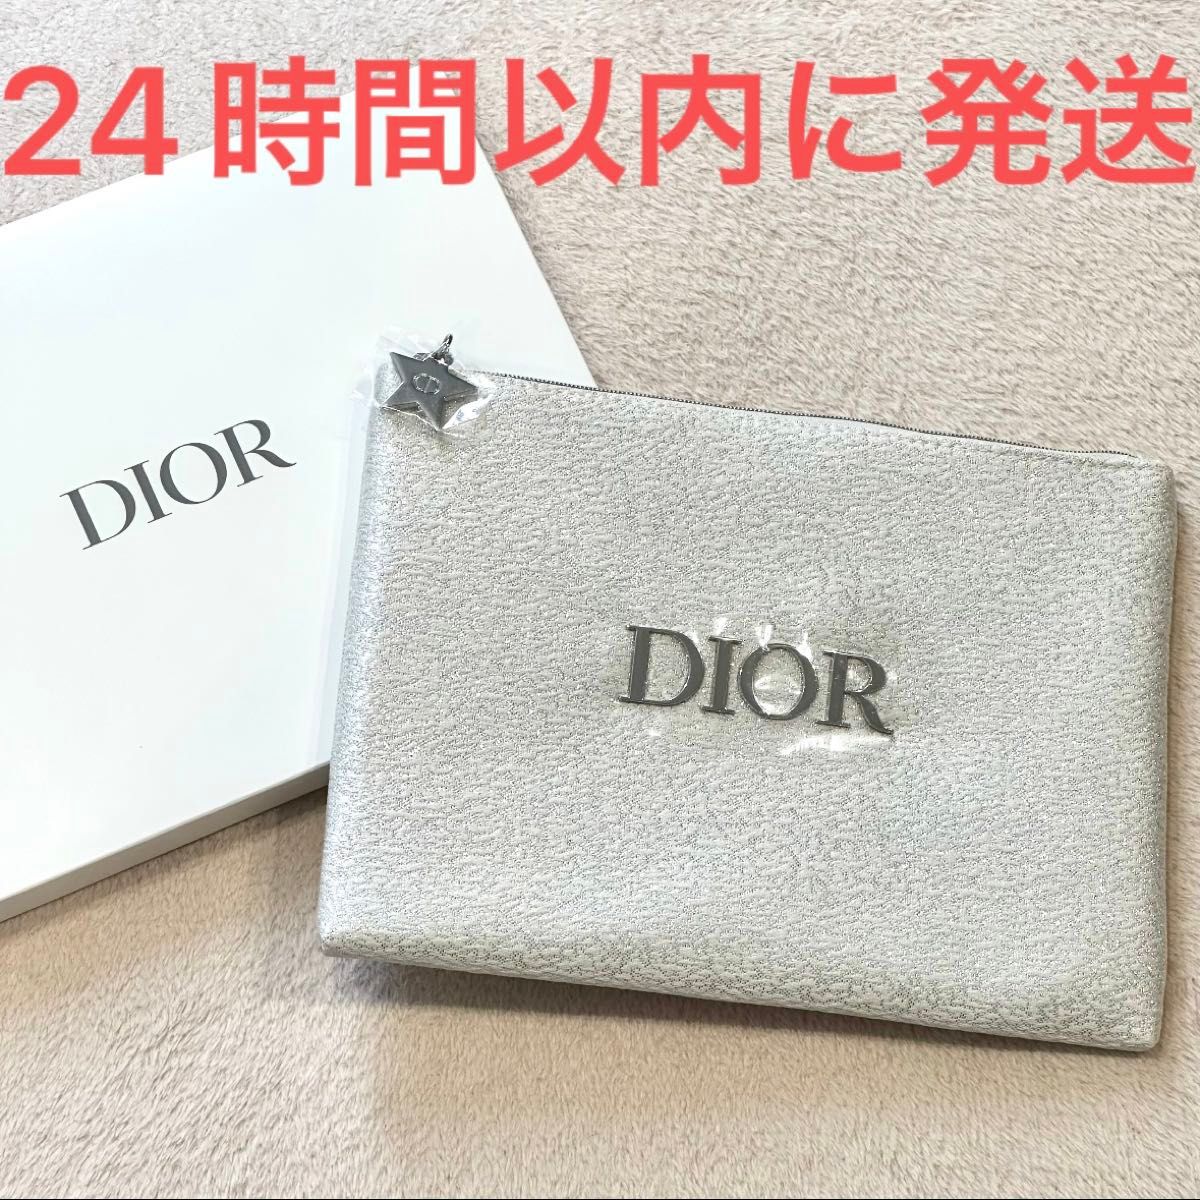 新品未使用☆Christian Dior クリスチャン・ディオール フラット ポーチ ノベルティ 白 ホワイト キラキラ スター